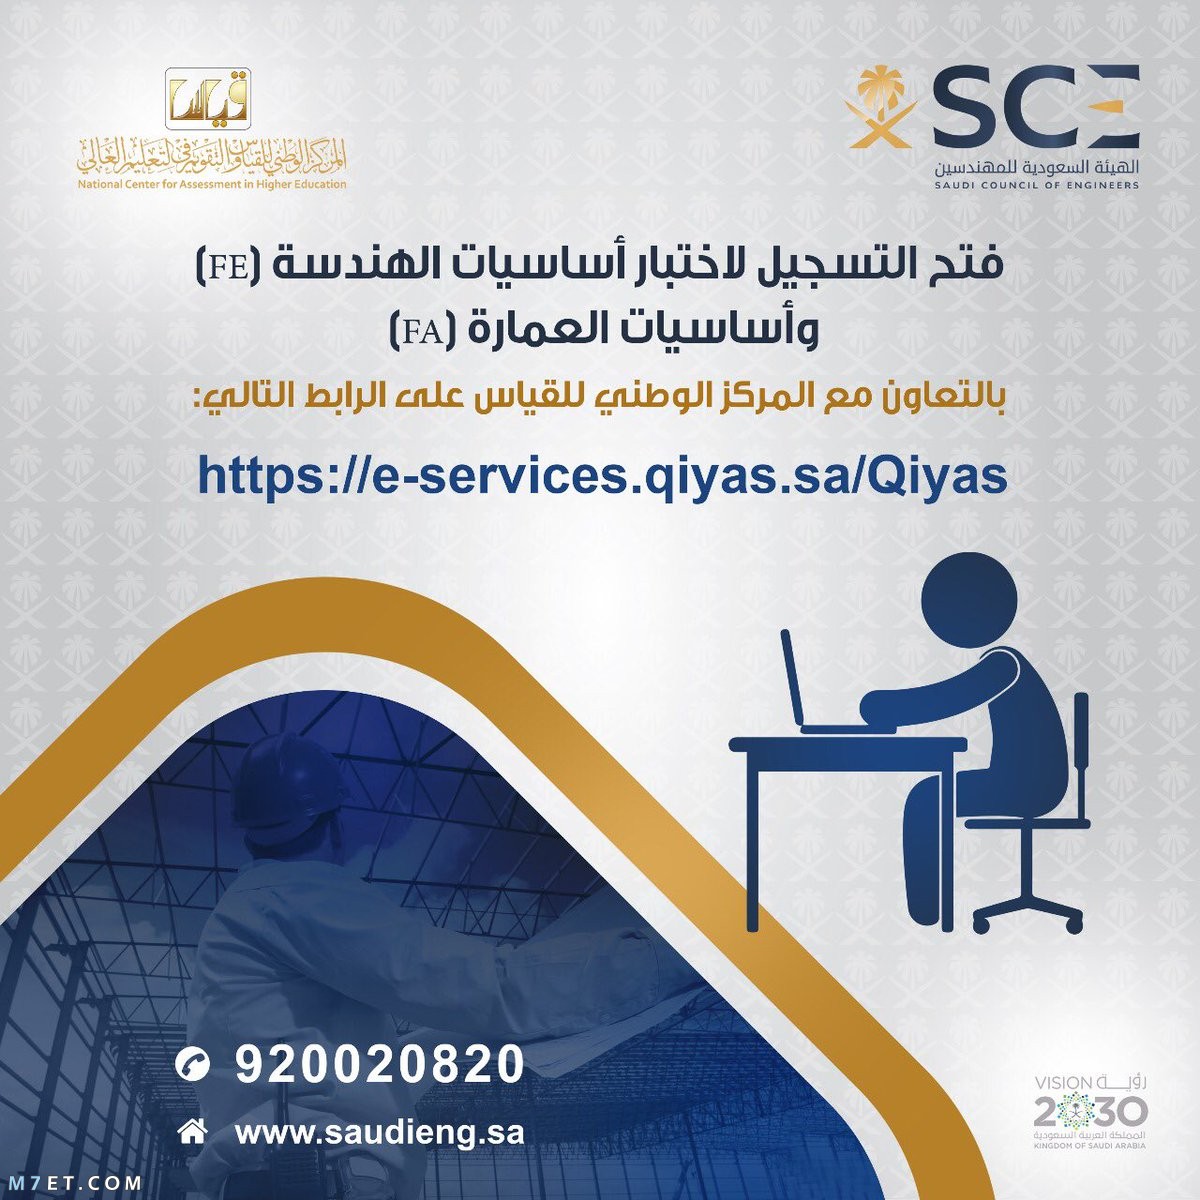 الهيئة السعودية للمهندسين تسجيل الدخول